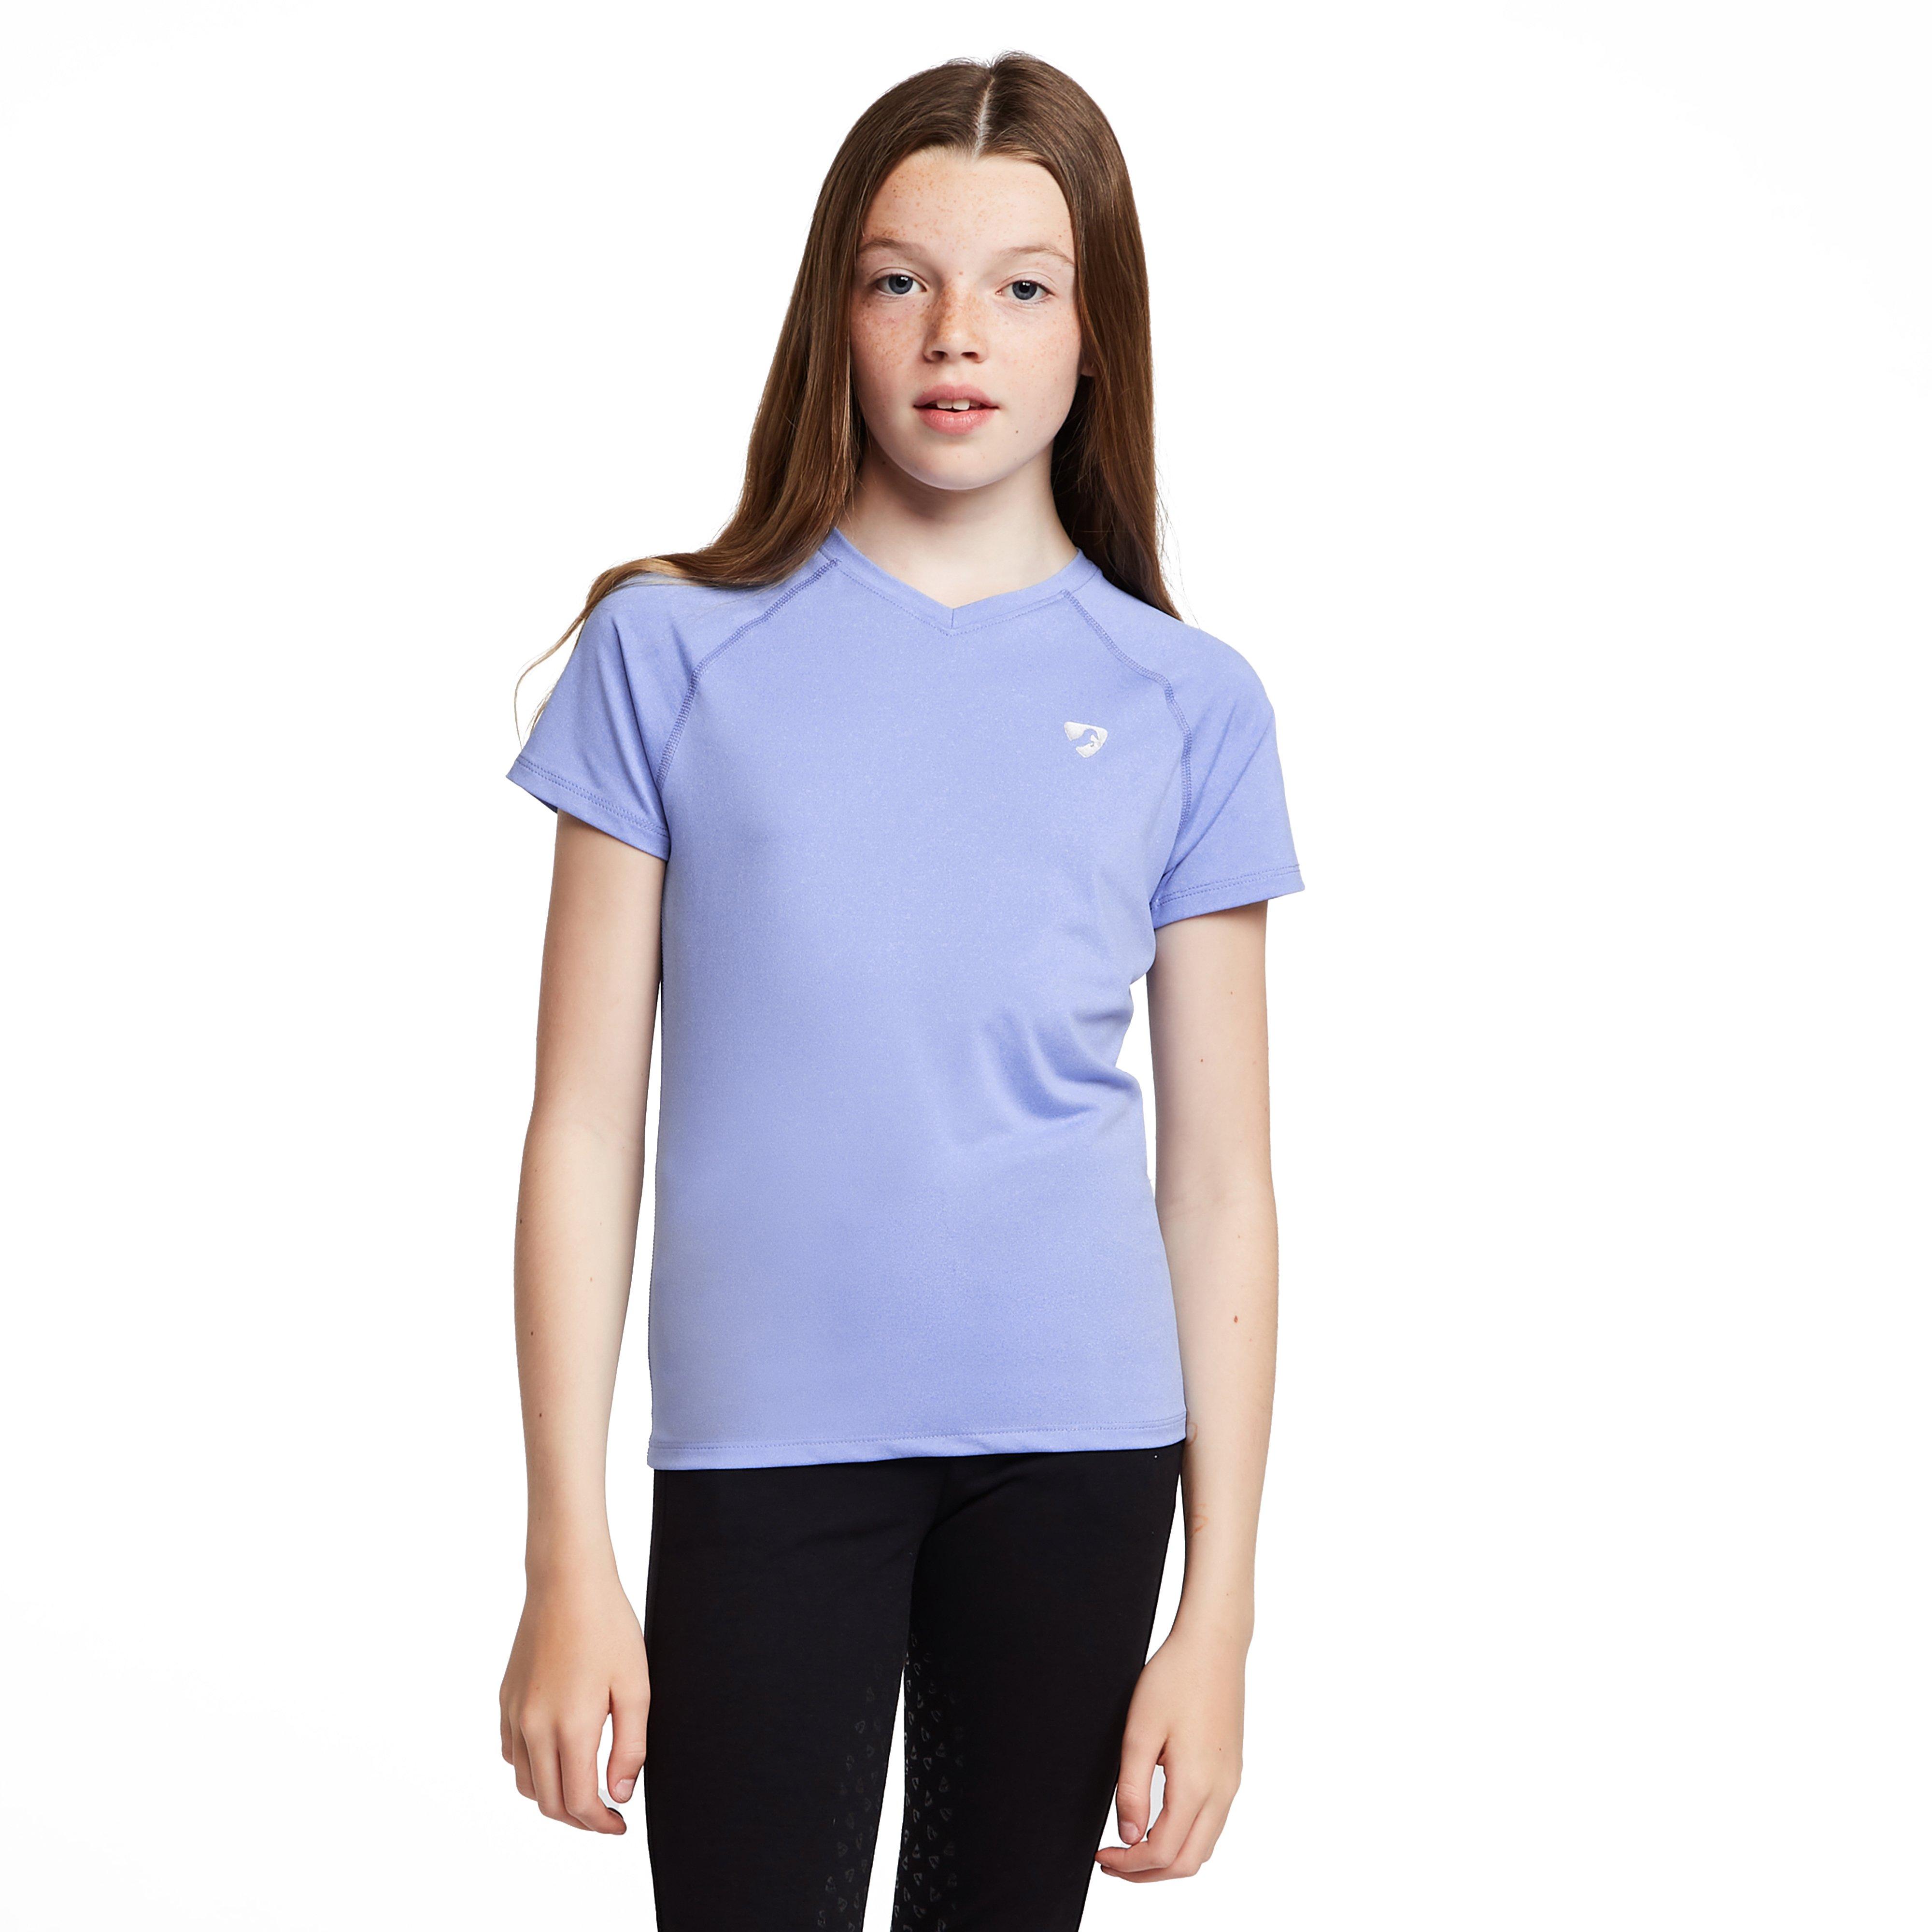 Childs Elverson Tech T-Shirt Sky Blue